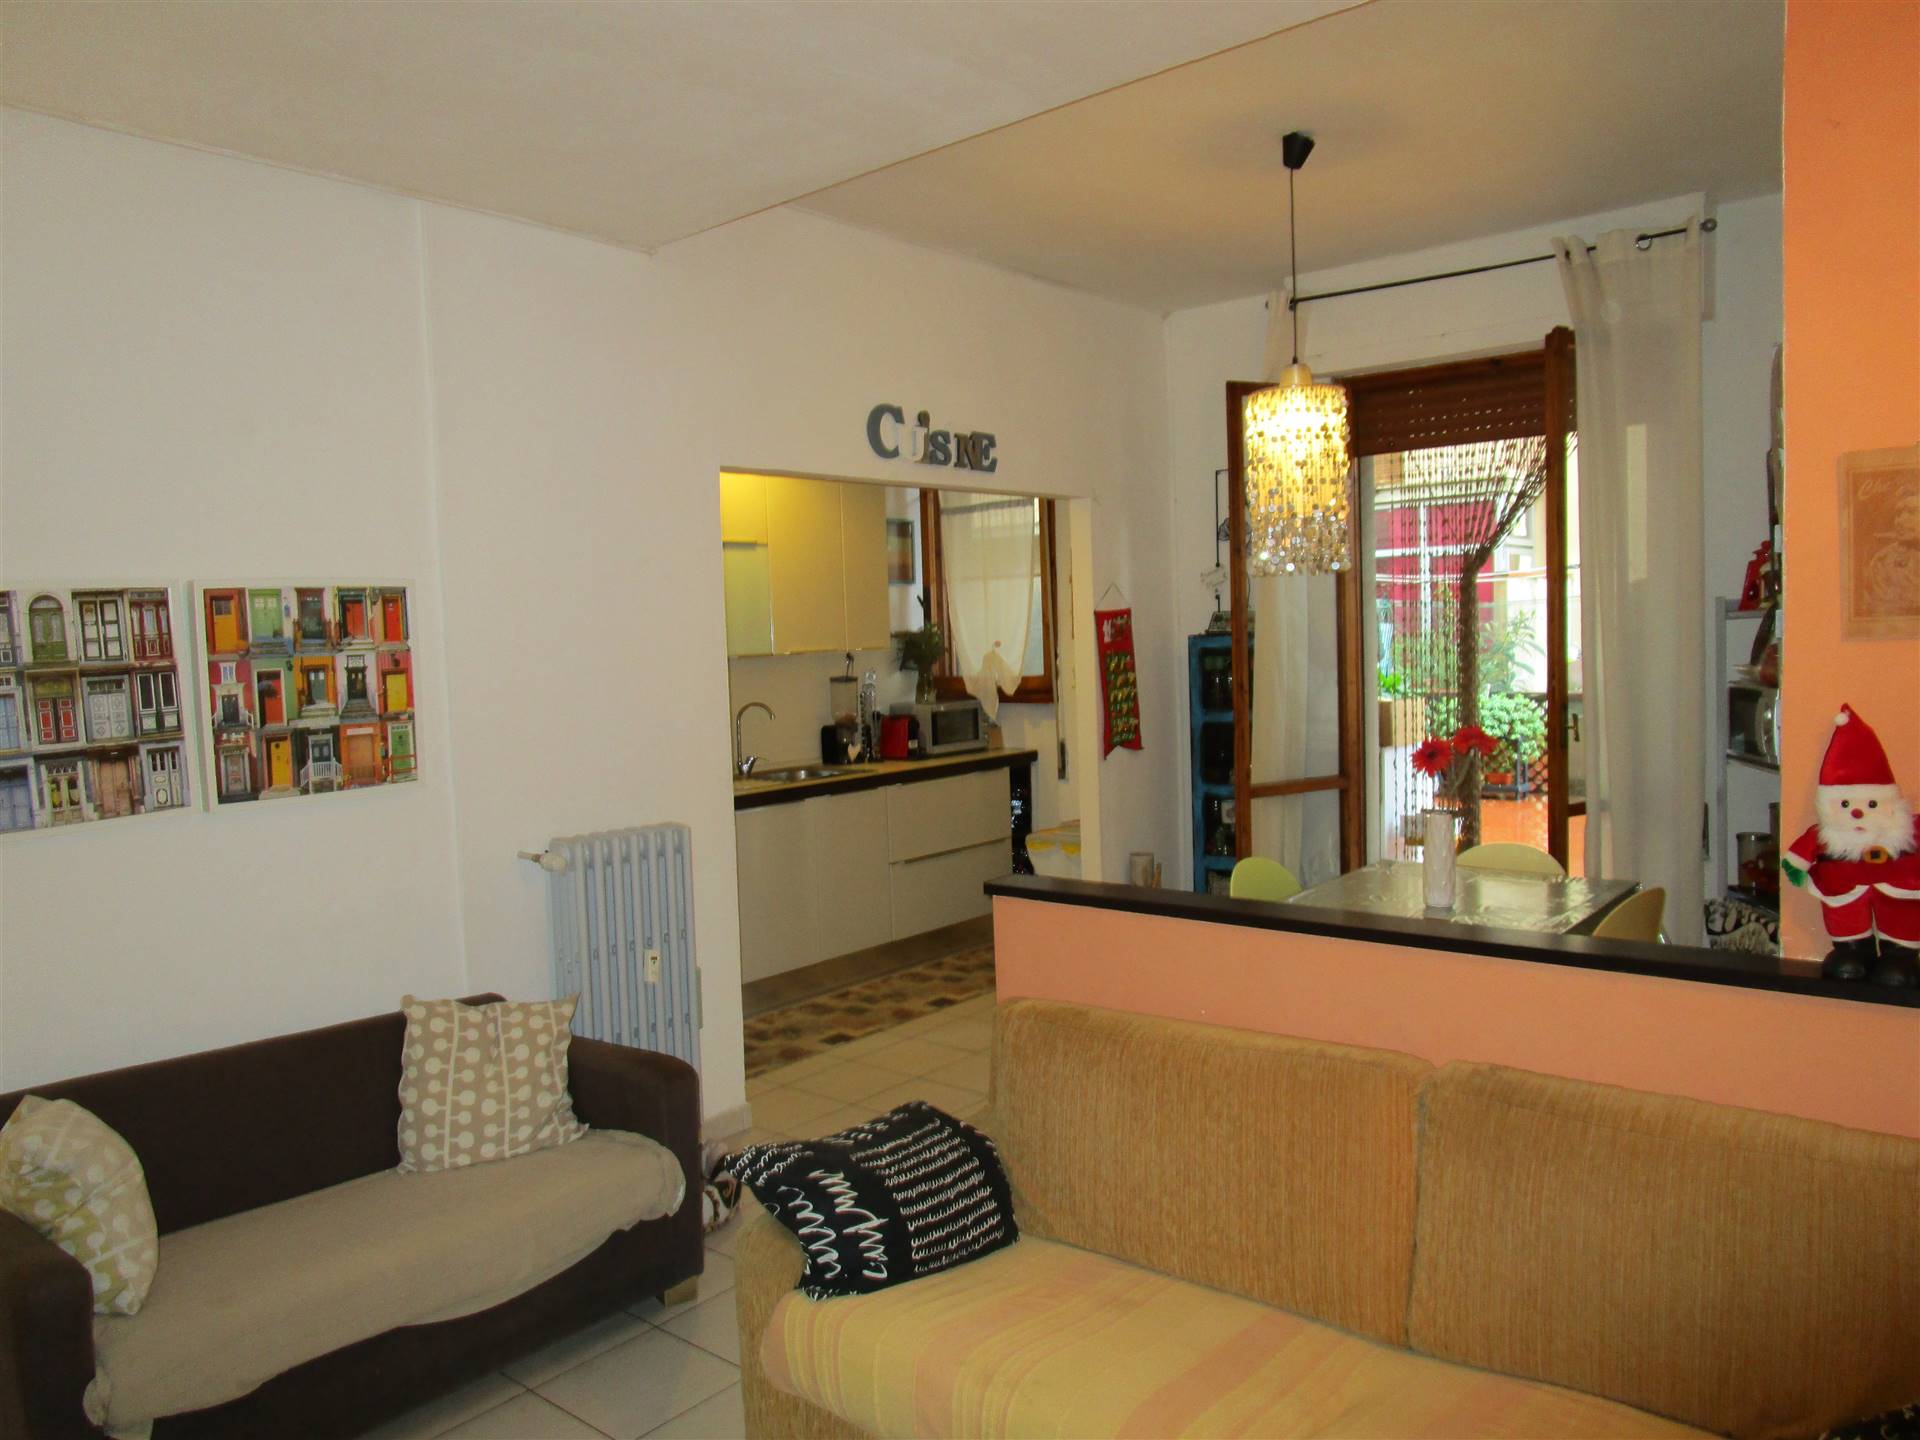 Appartamento in Vendita a Campi bisenzio zona San donnino - immagine 8